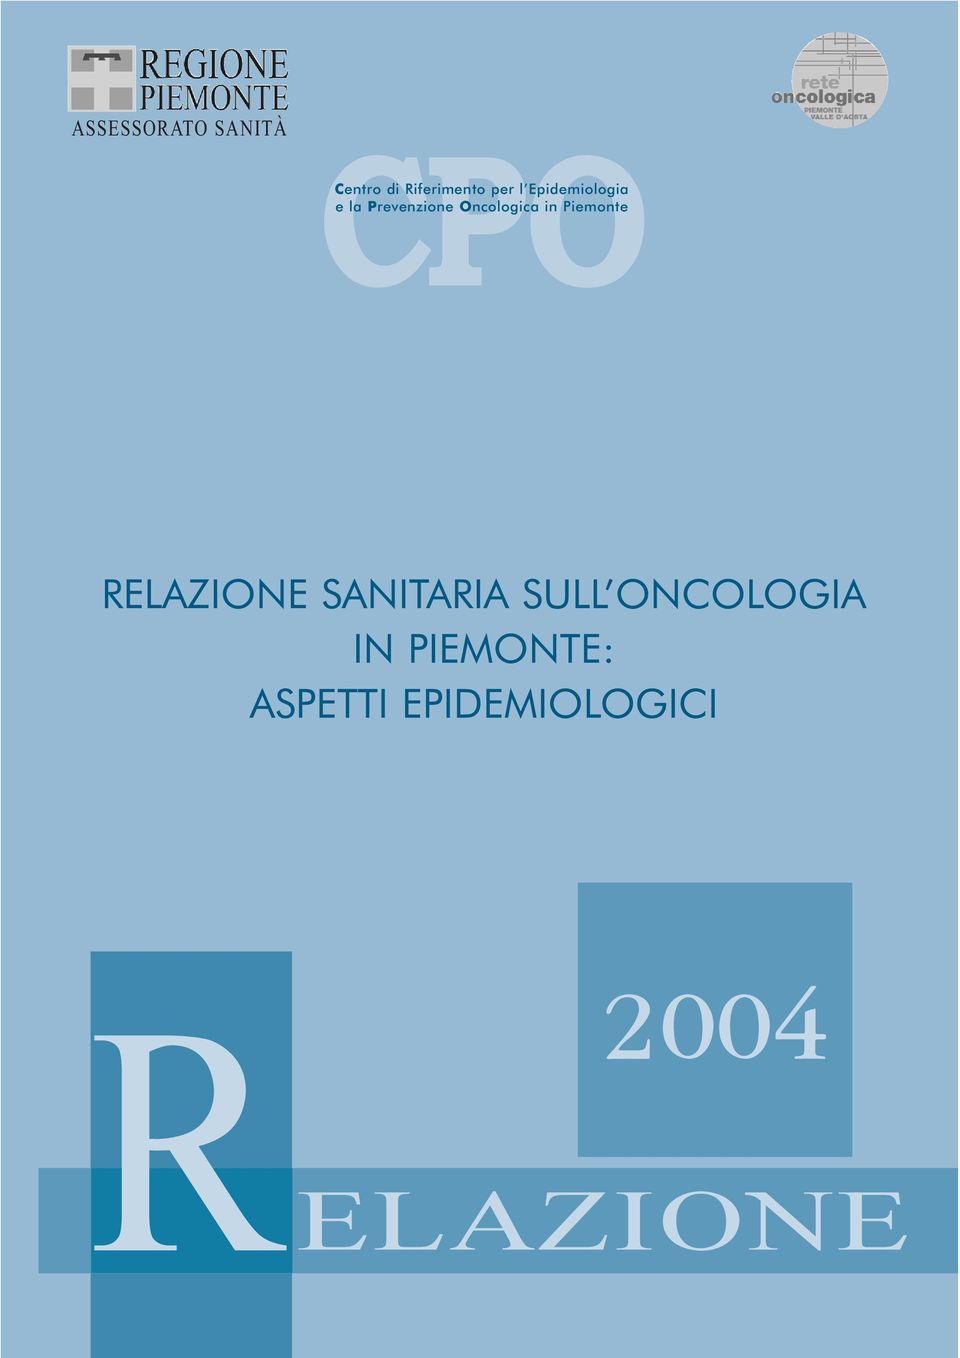 Oncologica in Piemonte RELAZIONE SANITARIA